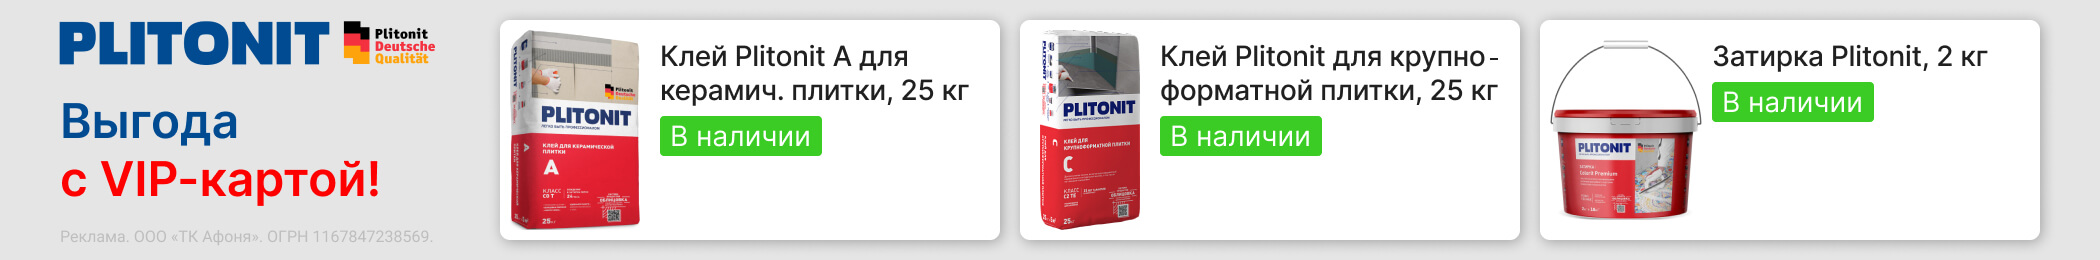 Plitonit™ - выгода с VIP картой